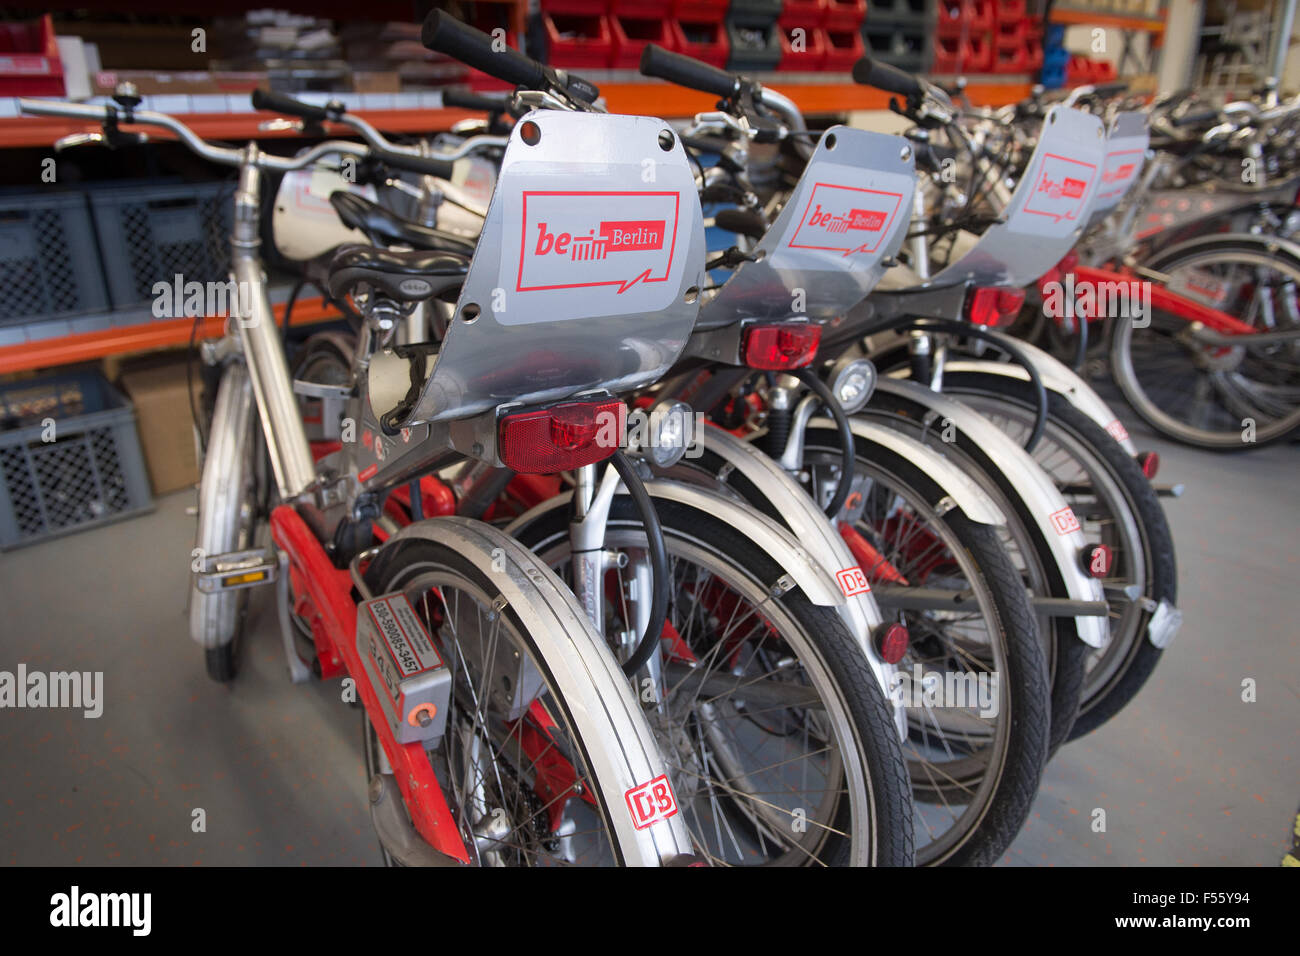 28.01.2015, Berlin, Berlin, Germania - German Rail fornisce uno sguardo dietro le quinte di chiamare una bici, la city bike per Berlino. Dal 2002, la città delle biciclette per le strade di Berlino sono in viaggio. 00Y150128D067CAROEX.JPG - non per la vendita in G E R M A N Y, A U S T R I A, S W I T Z e R L A N D [modello di rilascio: non applicabile, la proprietà di rilascio: NO (c) caro agenzia fotografica / Teich, http://www.caro-images.pl, info@carofoto.pl - nel caso di utilizzo di foto per non-scopi giornalistici, siete pregati di contattare l'Agenzia - la foto è soggetto a royalty!] Foto Stock